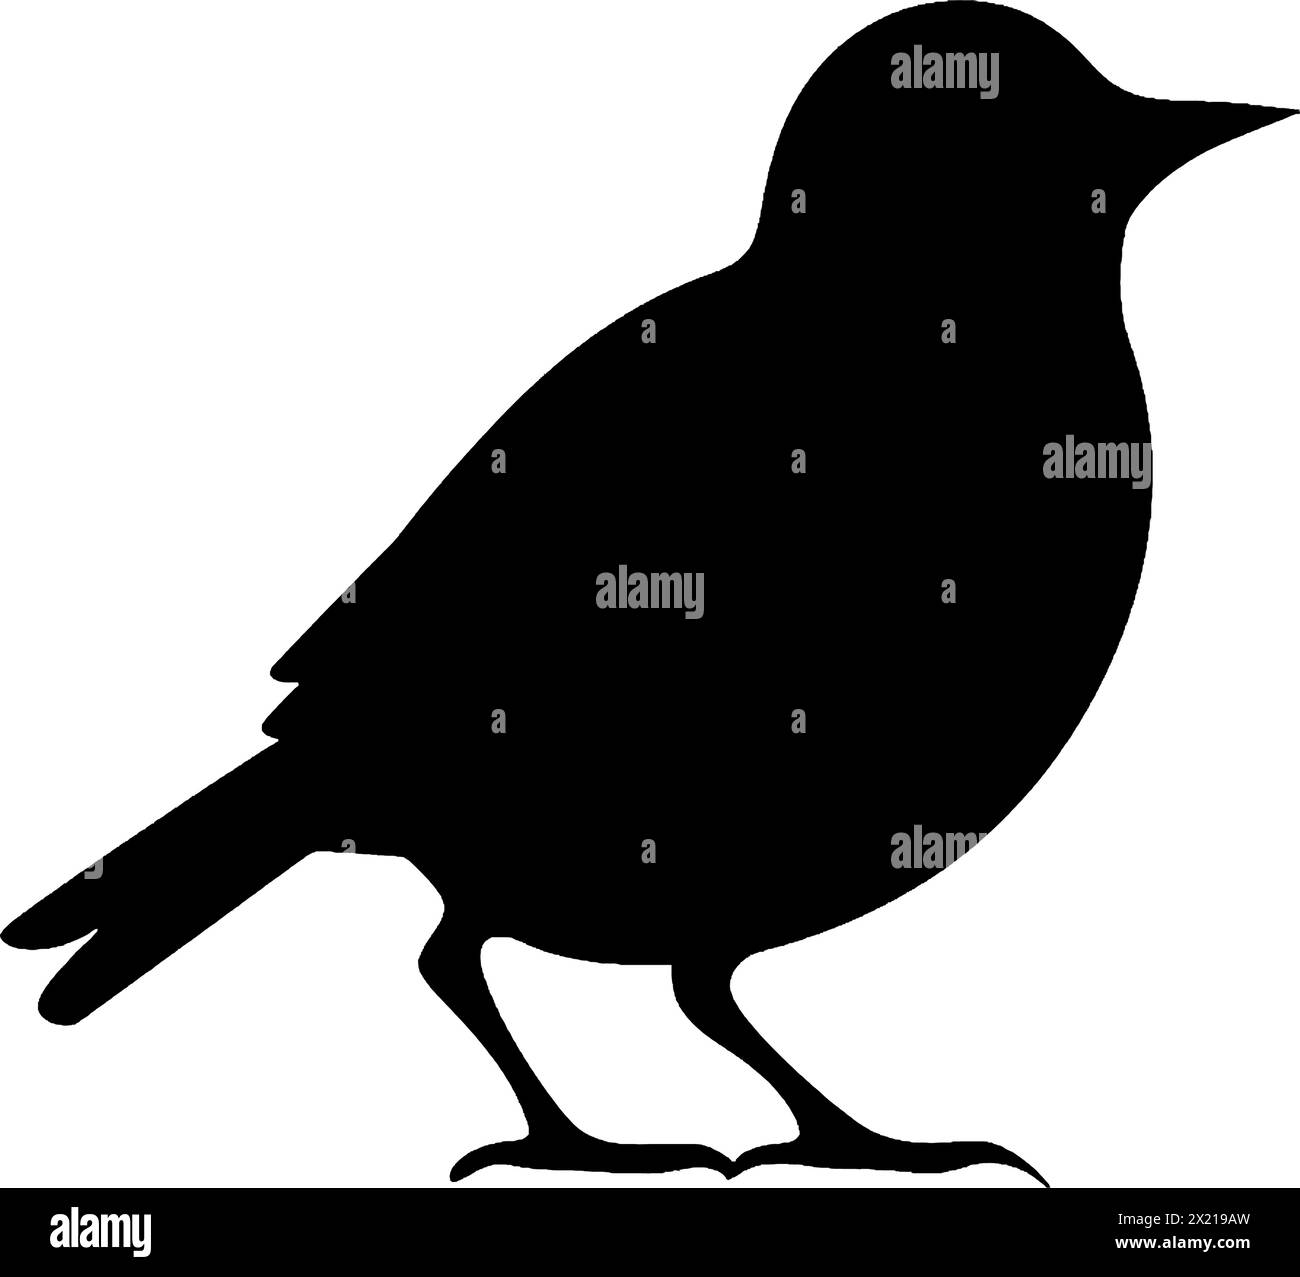 Illustration vectorielle d'un oiseau en silhouette noire sur un fond blanc propre, capturant des formes gracieuses. Illustration de Vecteur